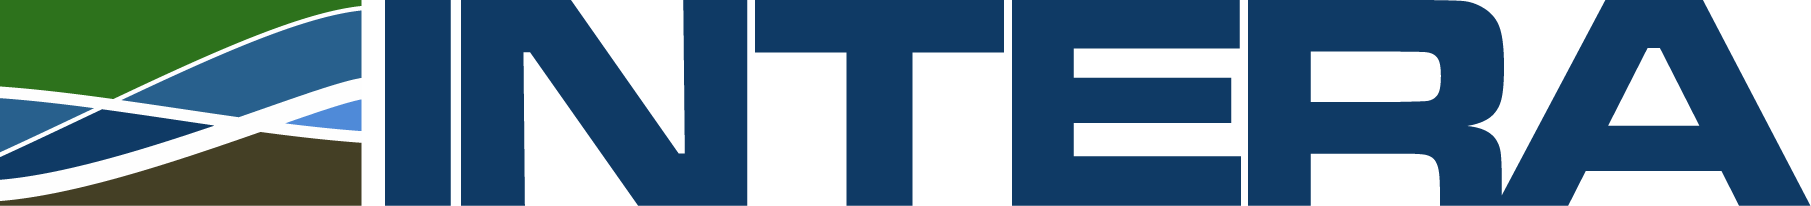 INTERA logo.png